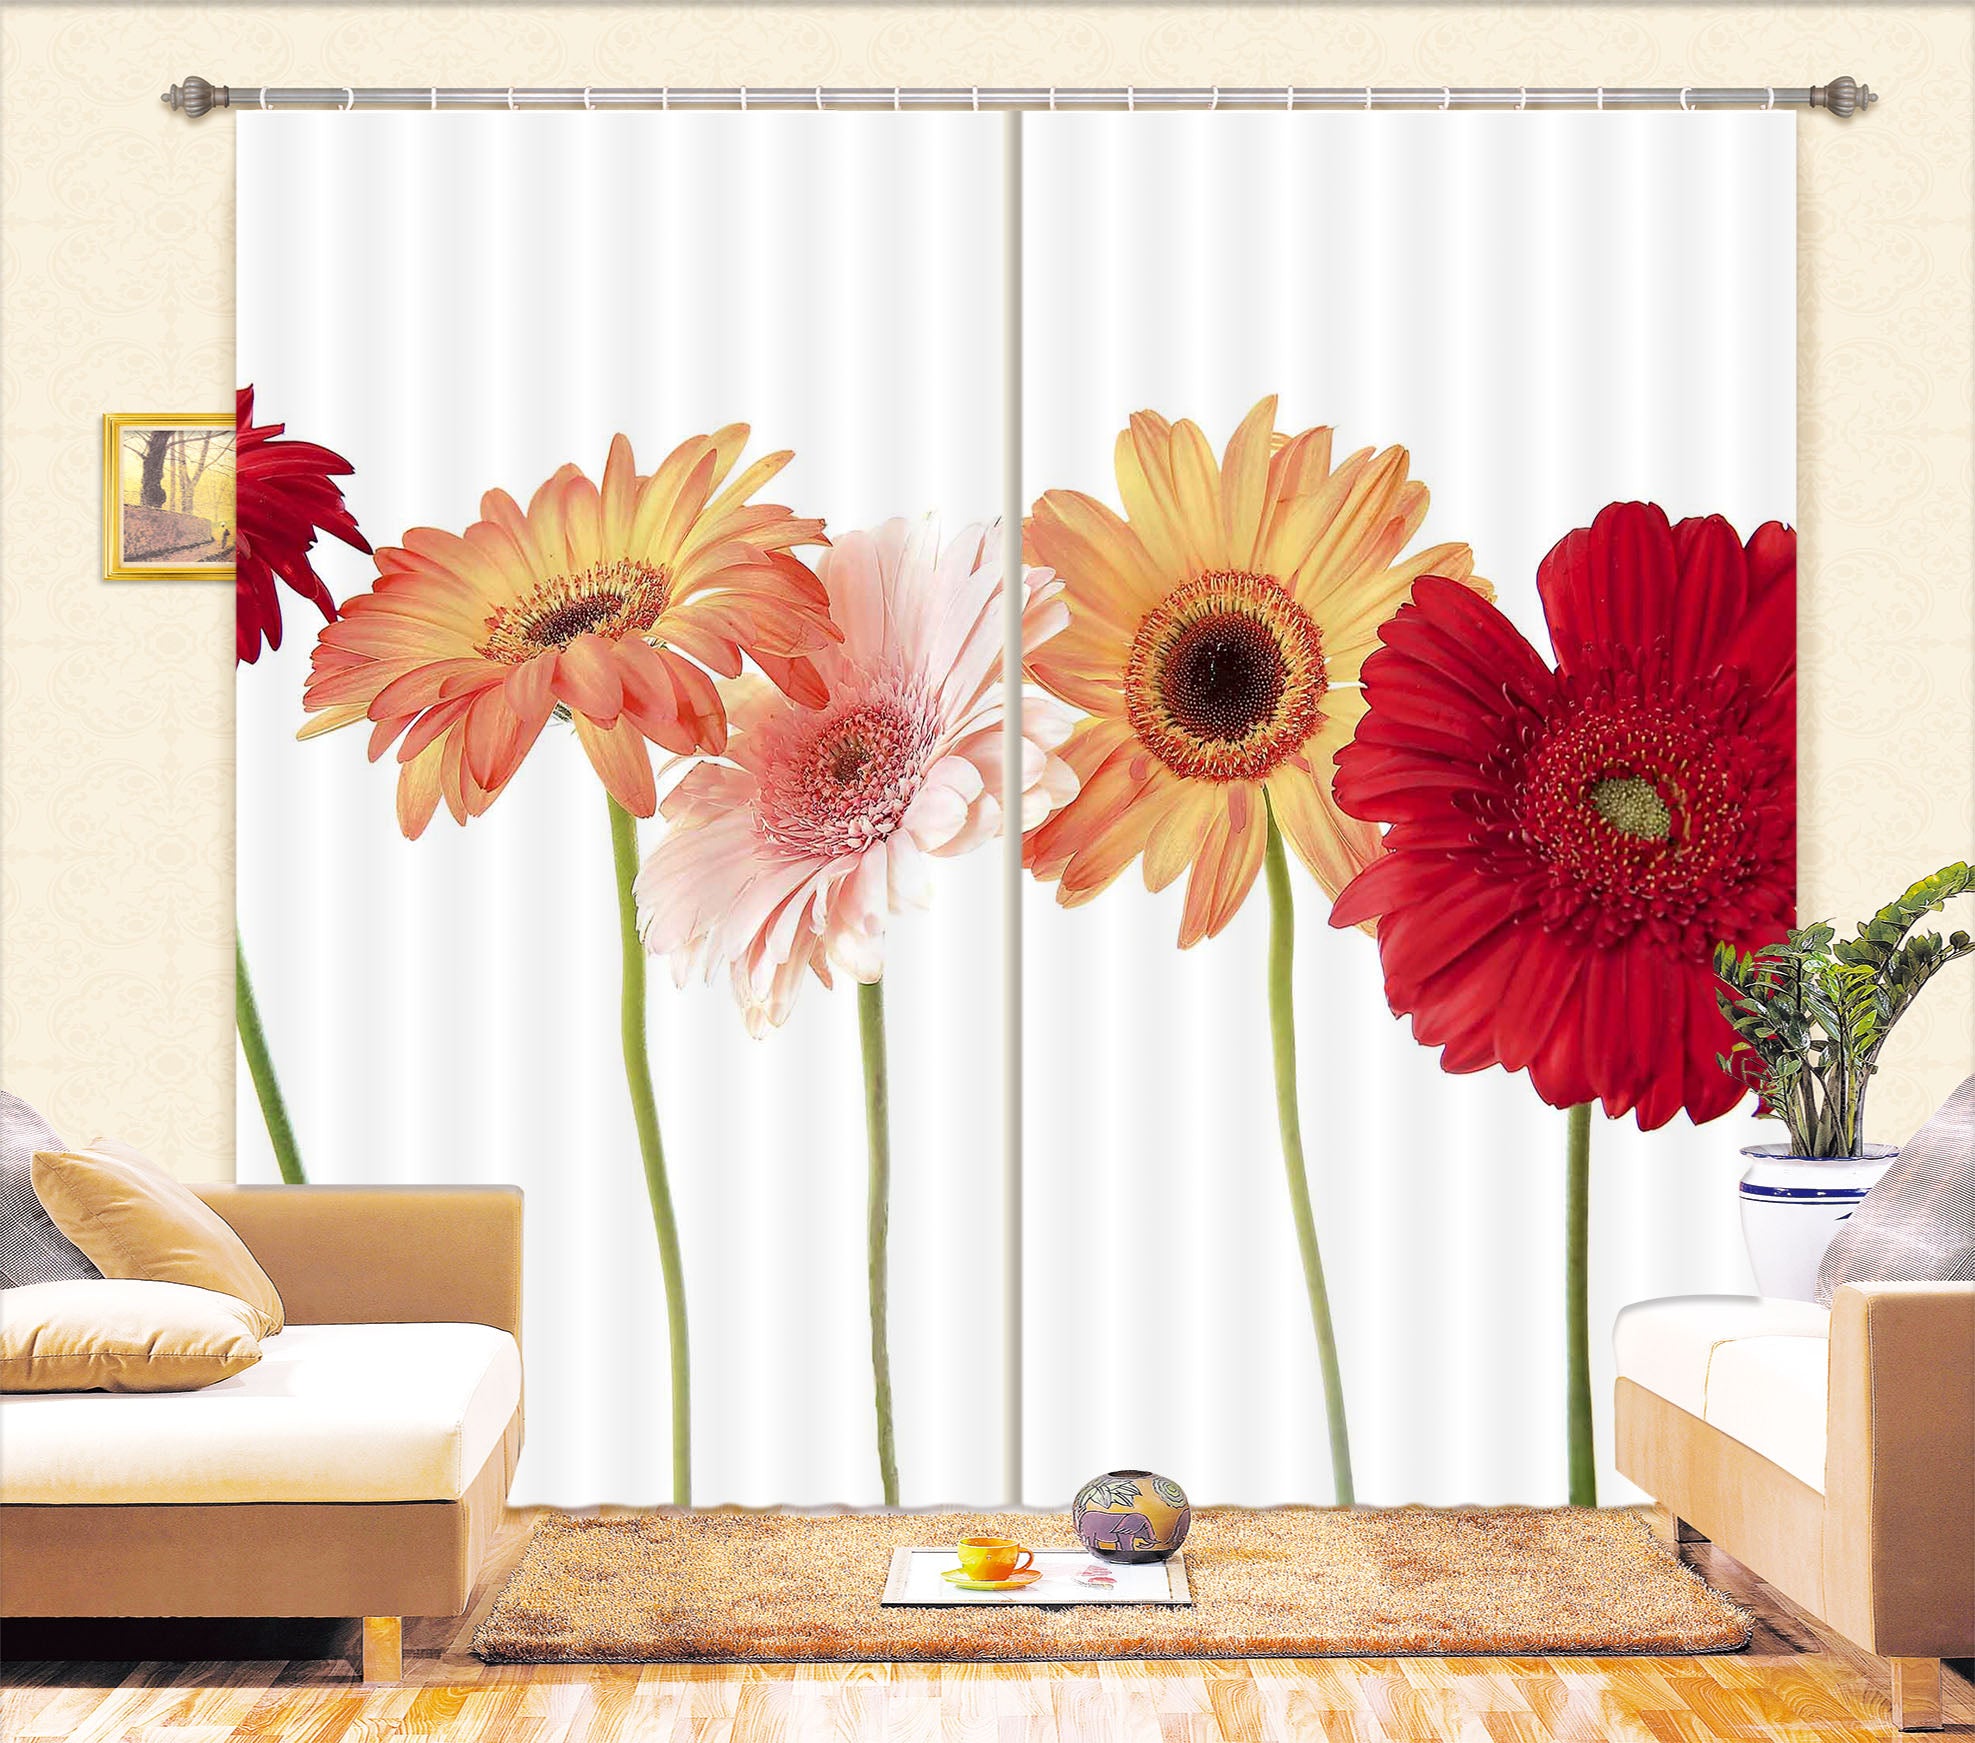 3D Daisy Flower 037 Kathy Barefield Curtain Curtains Drapes